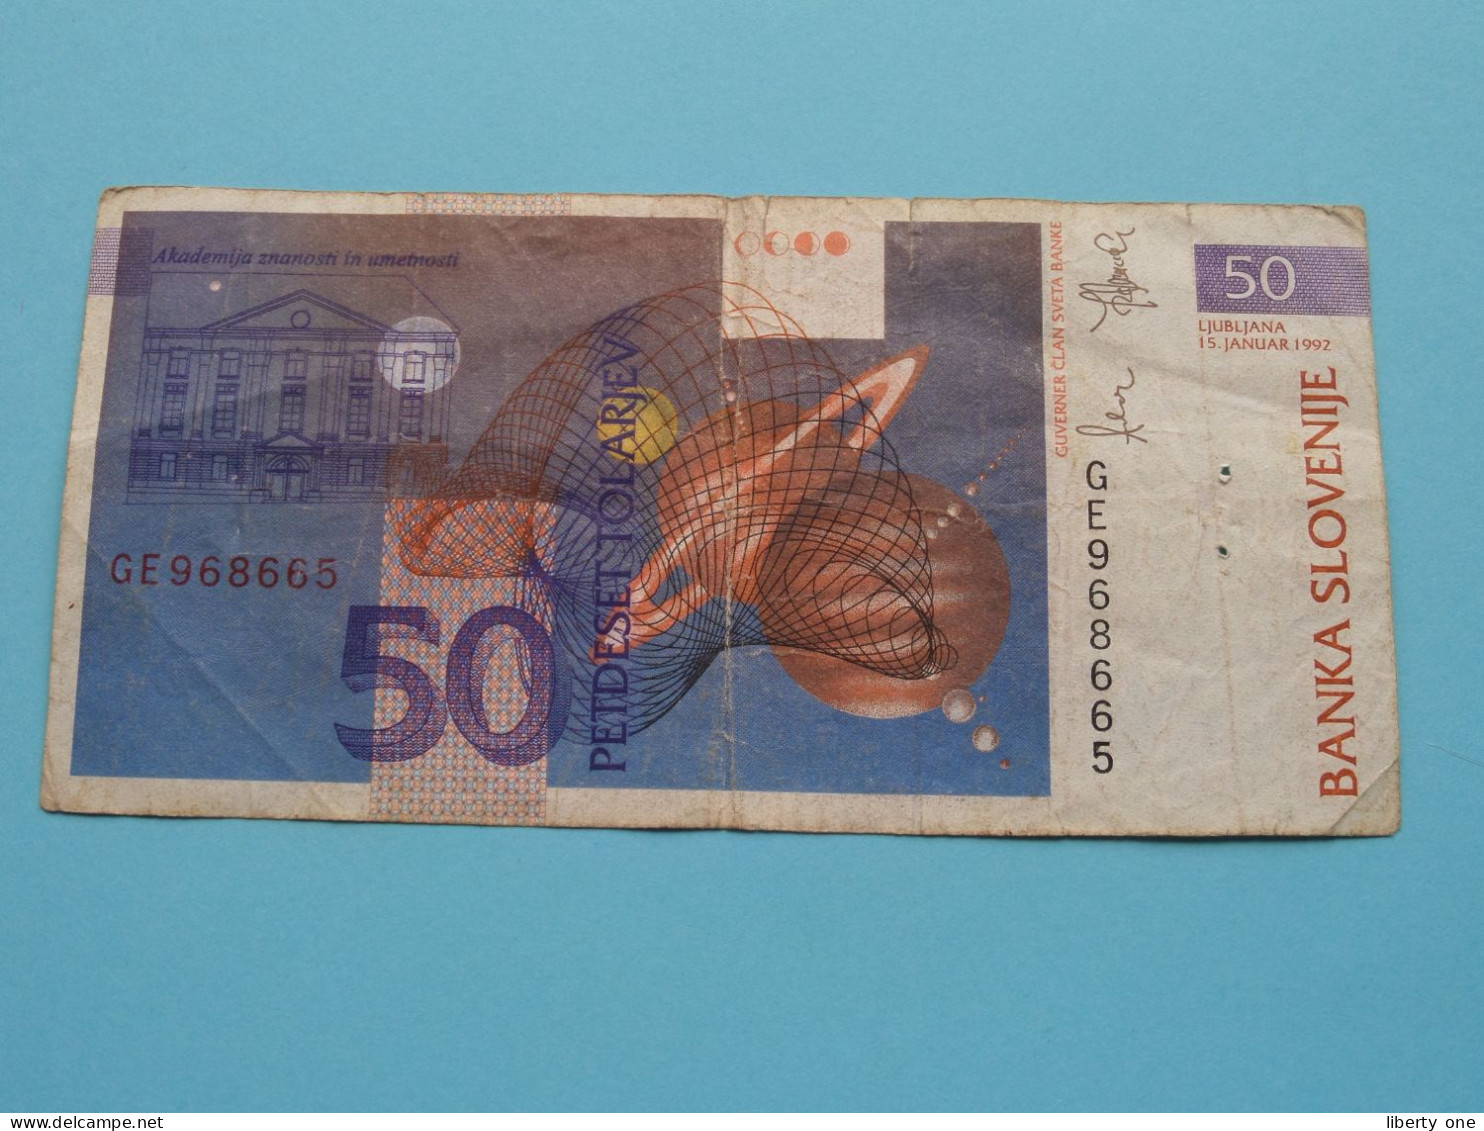 50 Tolarjev ( GE968665 ) Banka Slovenije - 1992( For Grade See SCAN ) Circulated ! - Slowenien